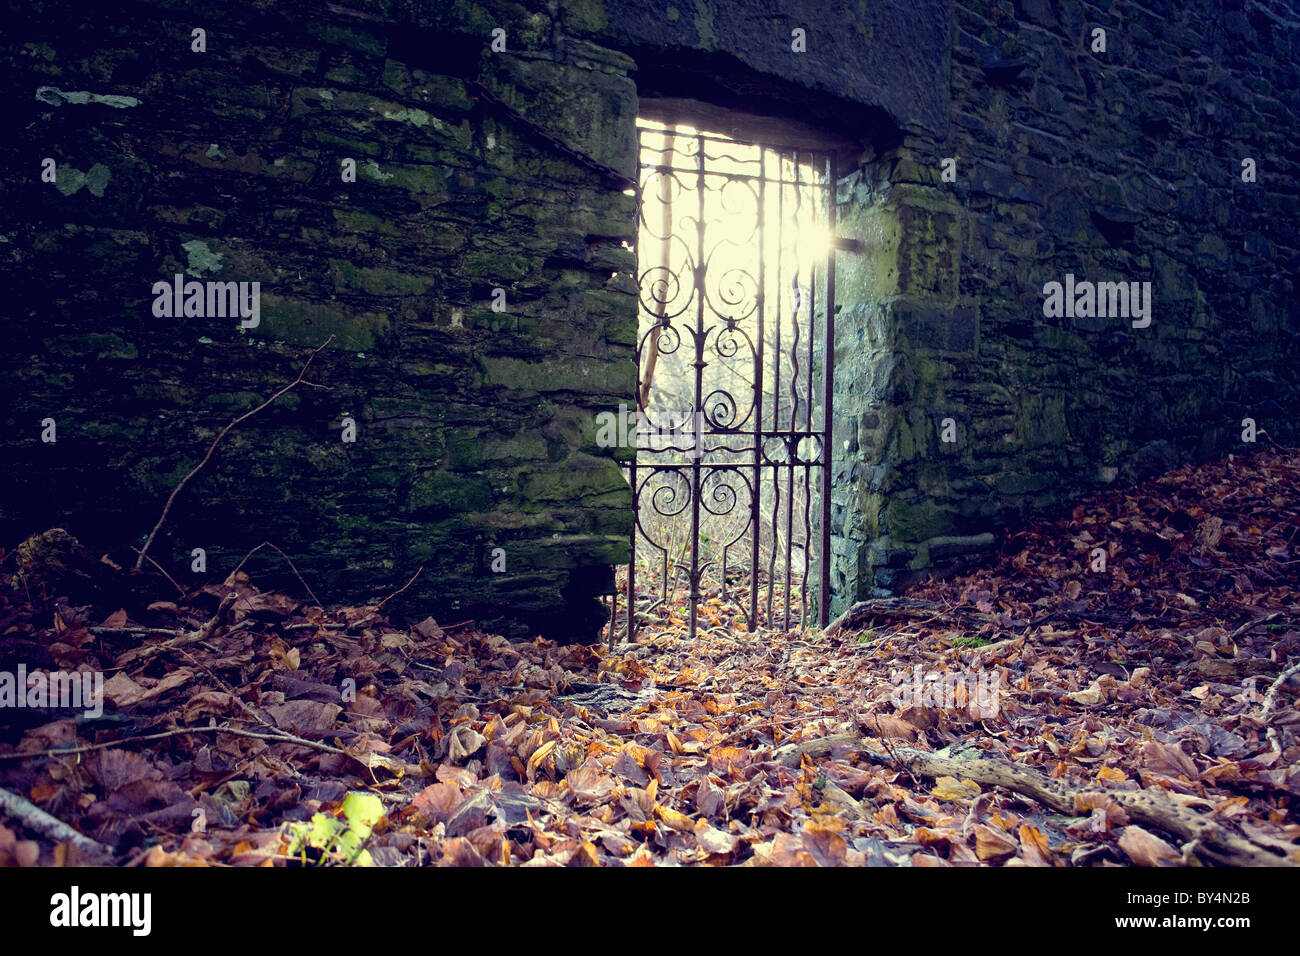 Puerta de entrada a un jardín secreto, Dumfries y Galloway, Escocia Foto de stock